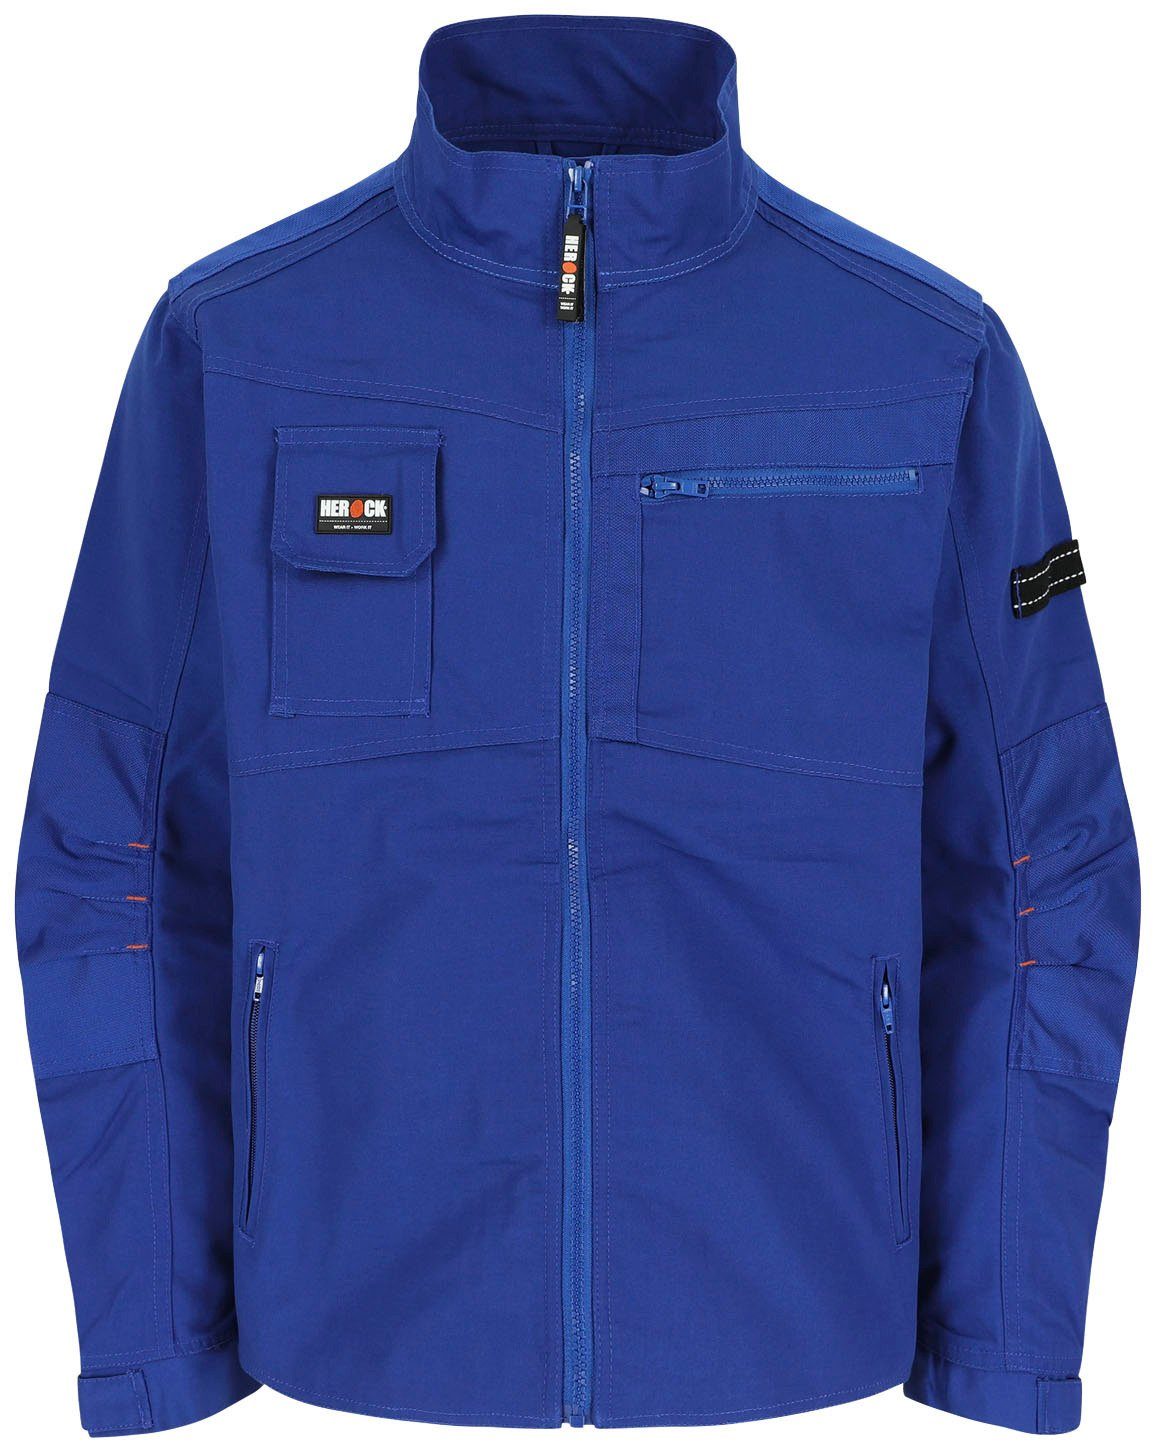 - blau Arbeitsjacke robust - - Taschen Herock Jacke Wasserabweisend verstellbare Anzar Bündchen 7